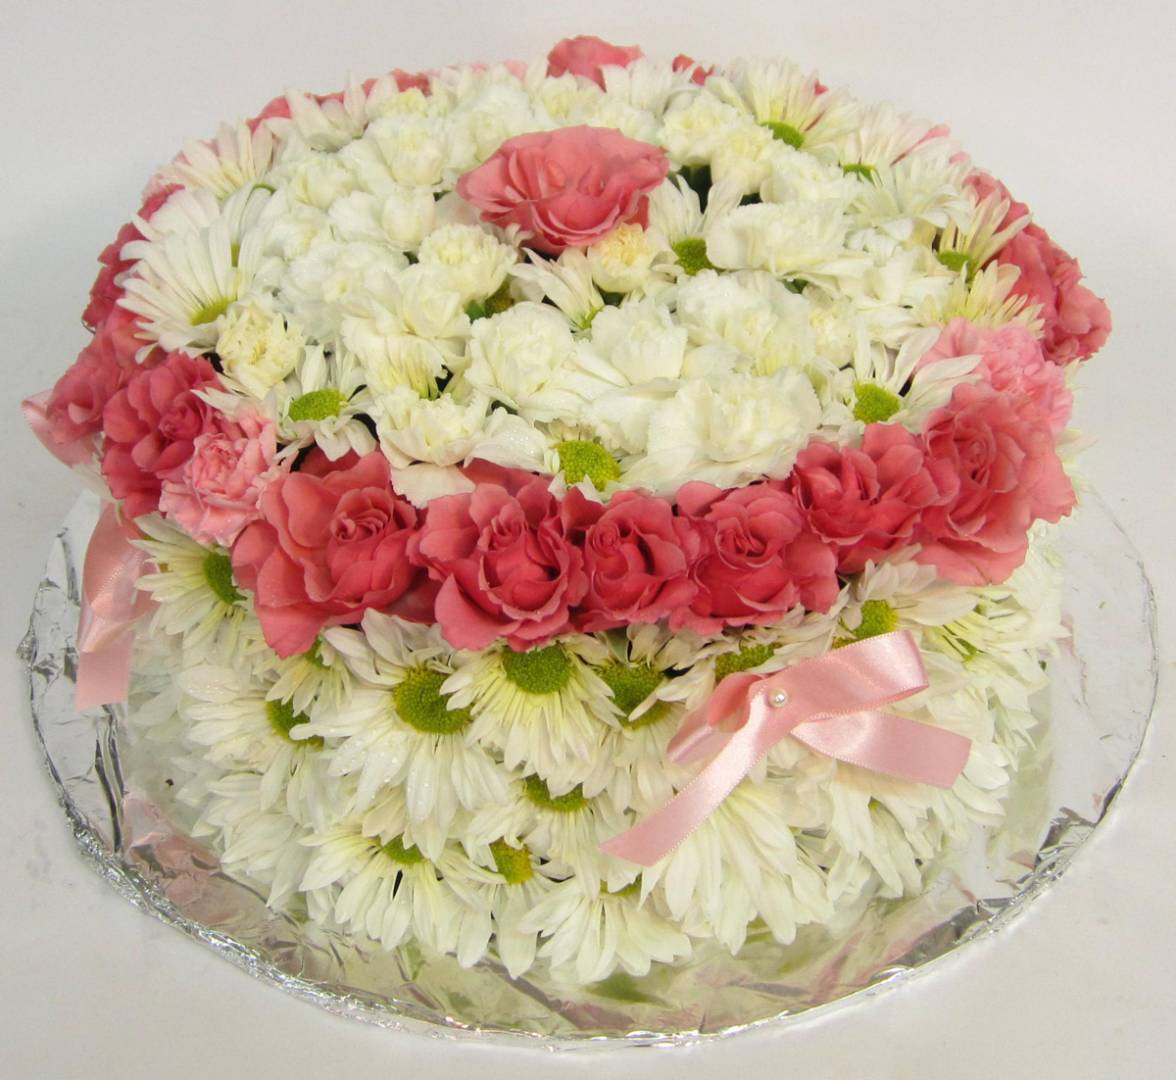 Λευκή τούρτα με ρόζ λεπτομέρειες